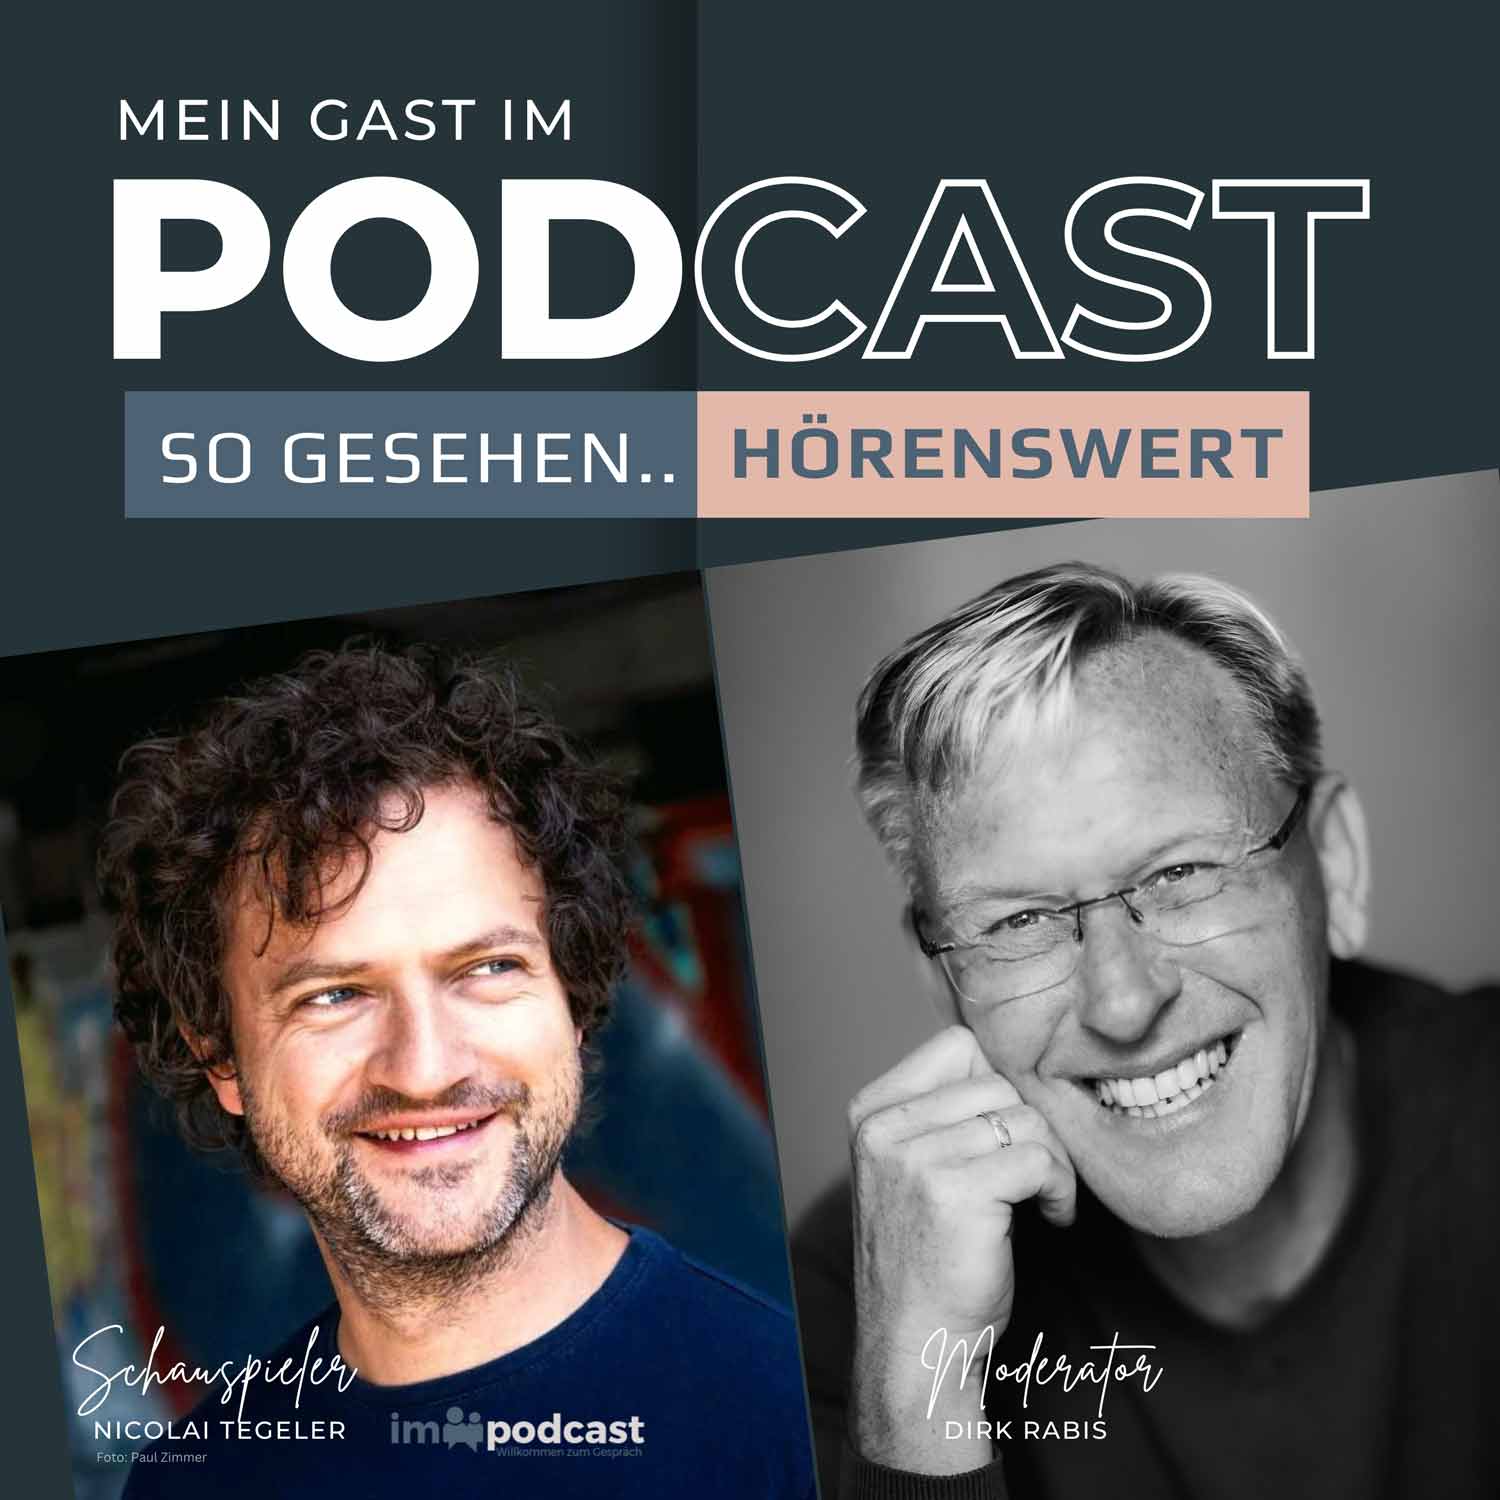 Schauspieler Nicolai Tegeler im Podcast mit Dirk Rabis - So gesehen hörenswert